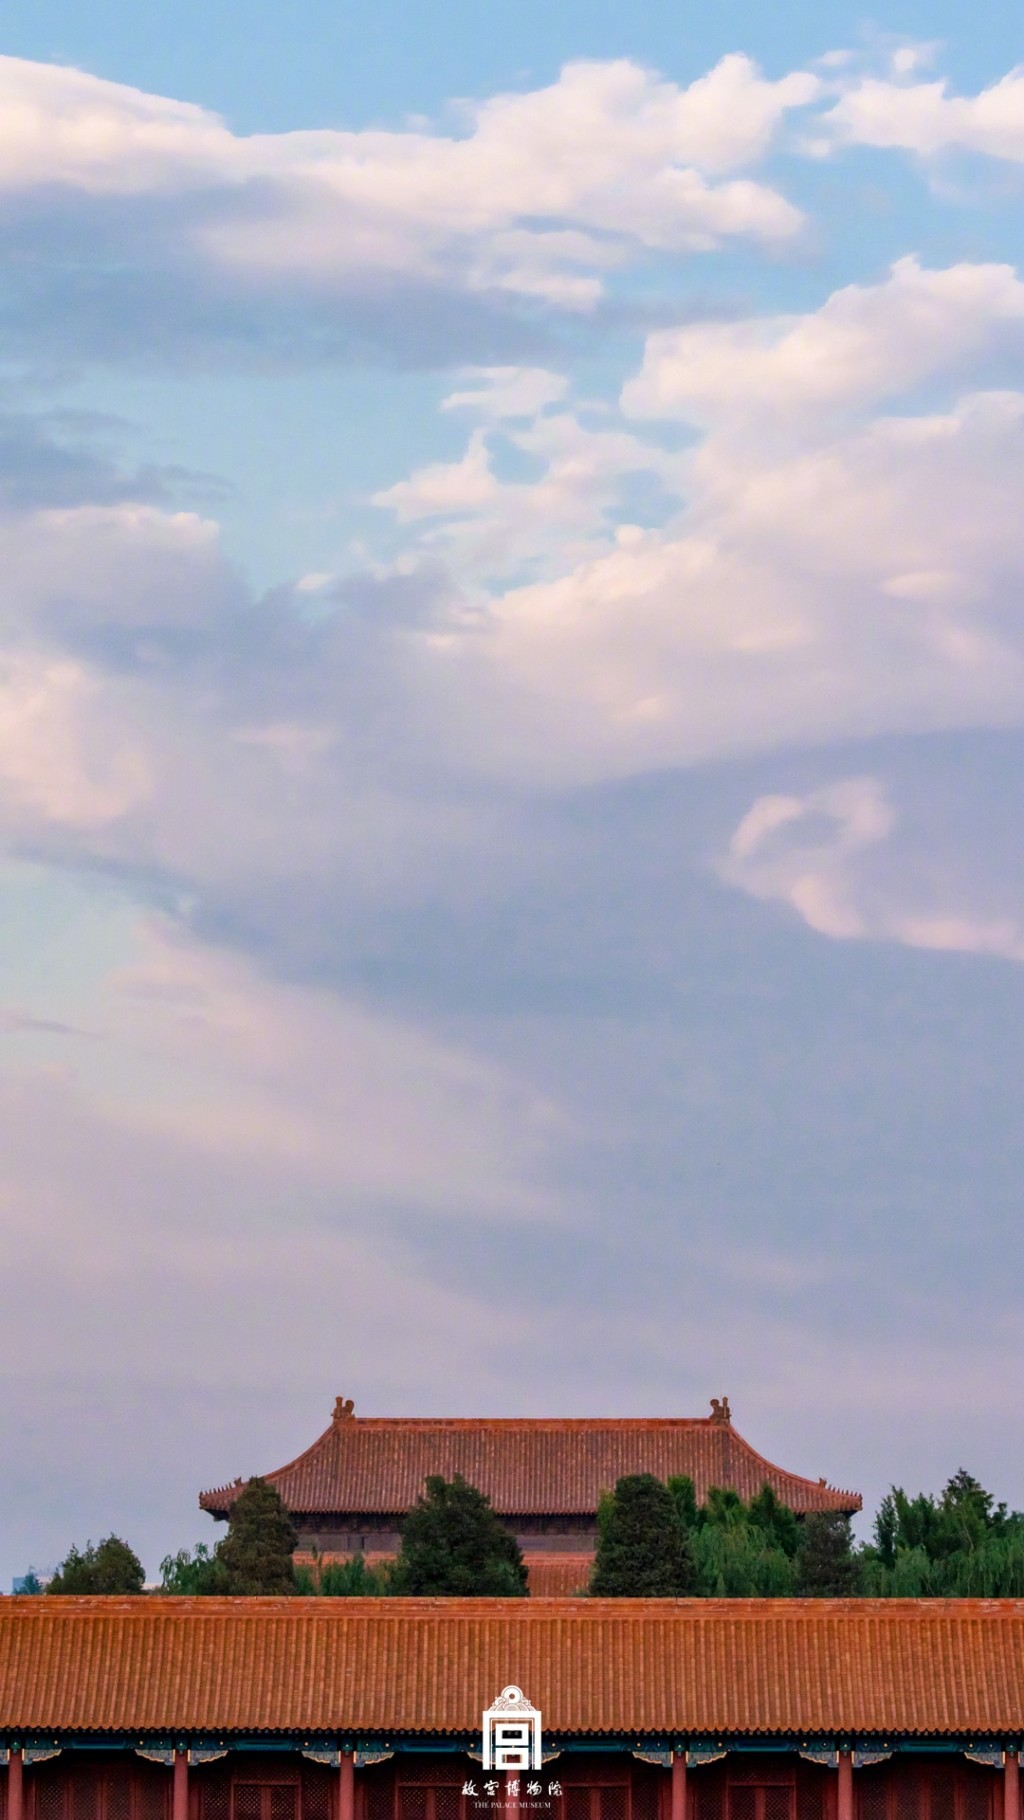 故宫博物院夕阳云彩风景手机壁纸